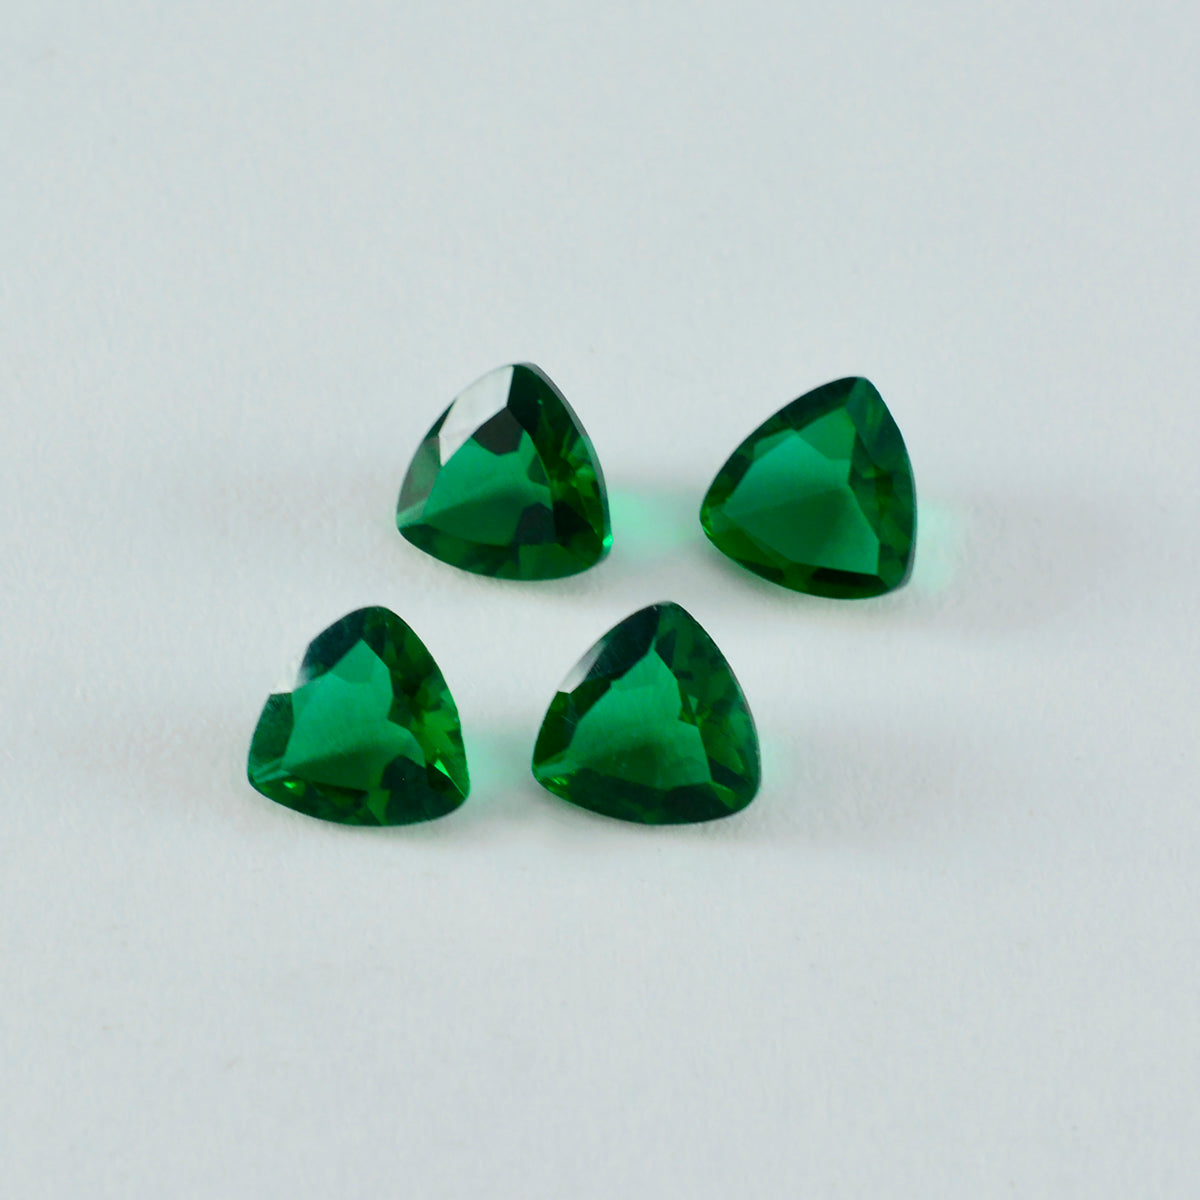 Riyogems 1 Stück grüner Smaragd, CZ, facettiert, 12 x 12 mm, Trillionenform, Edelsteine in AAA-Qualität